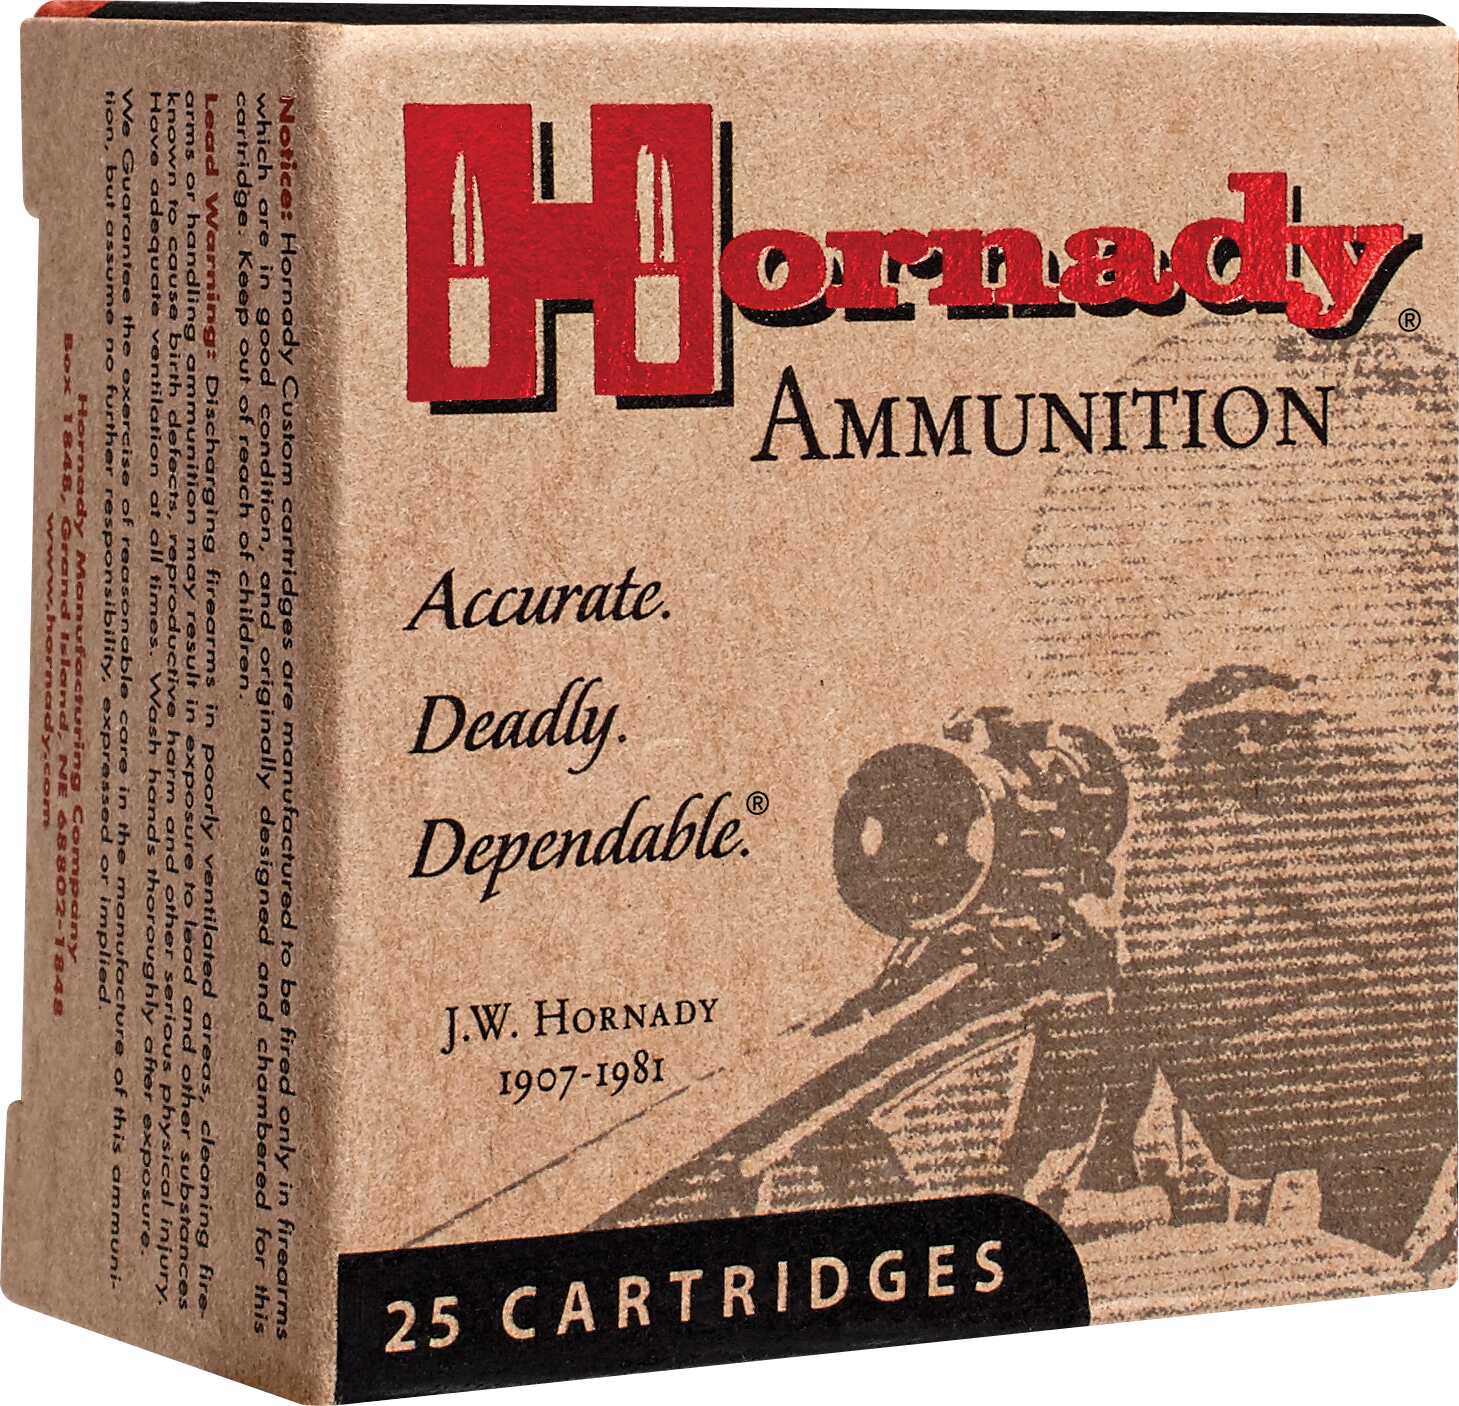 44-40 Hornady 205 Grain Cowboy Ammunition Per 20 Md: 9075